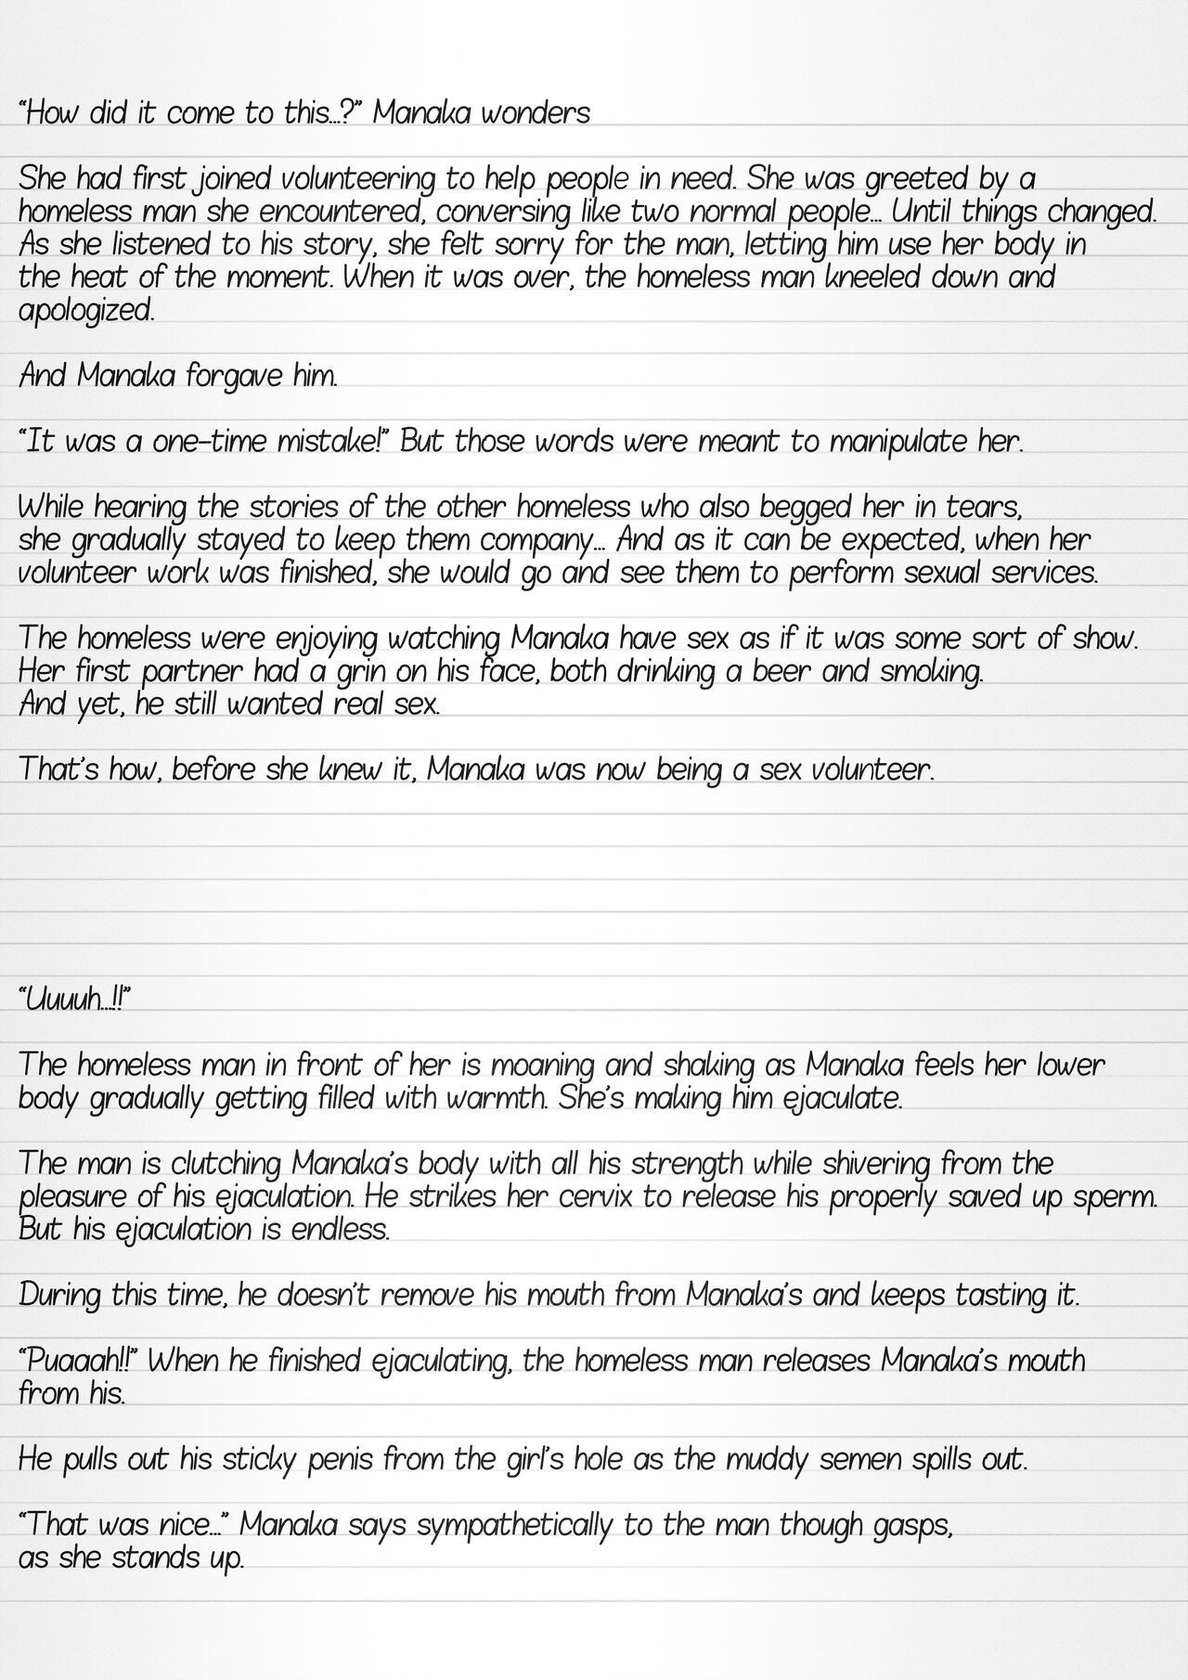 [Tiba-Santi (Misuke)] Misuke's Short Stories 6 - Manaka & the Homeless (ToHeart2 Dungeon Travelers) [English]